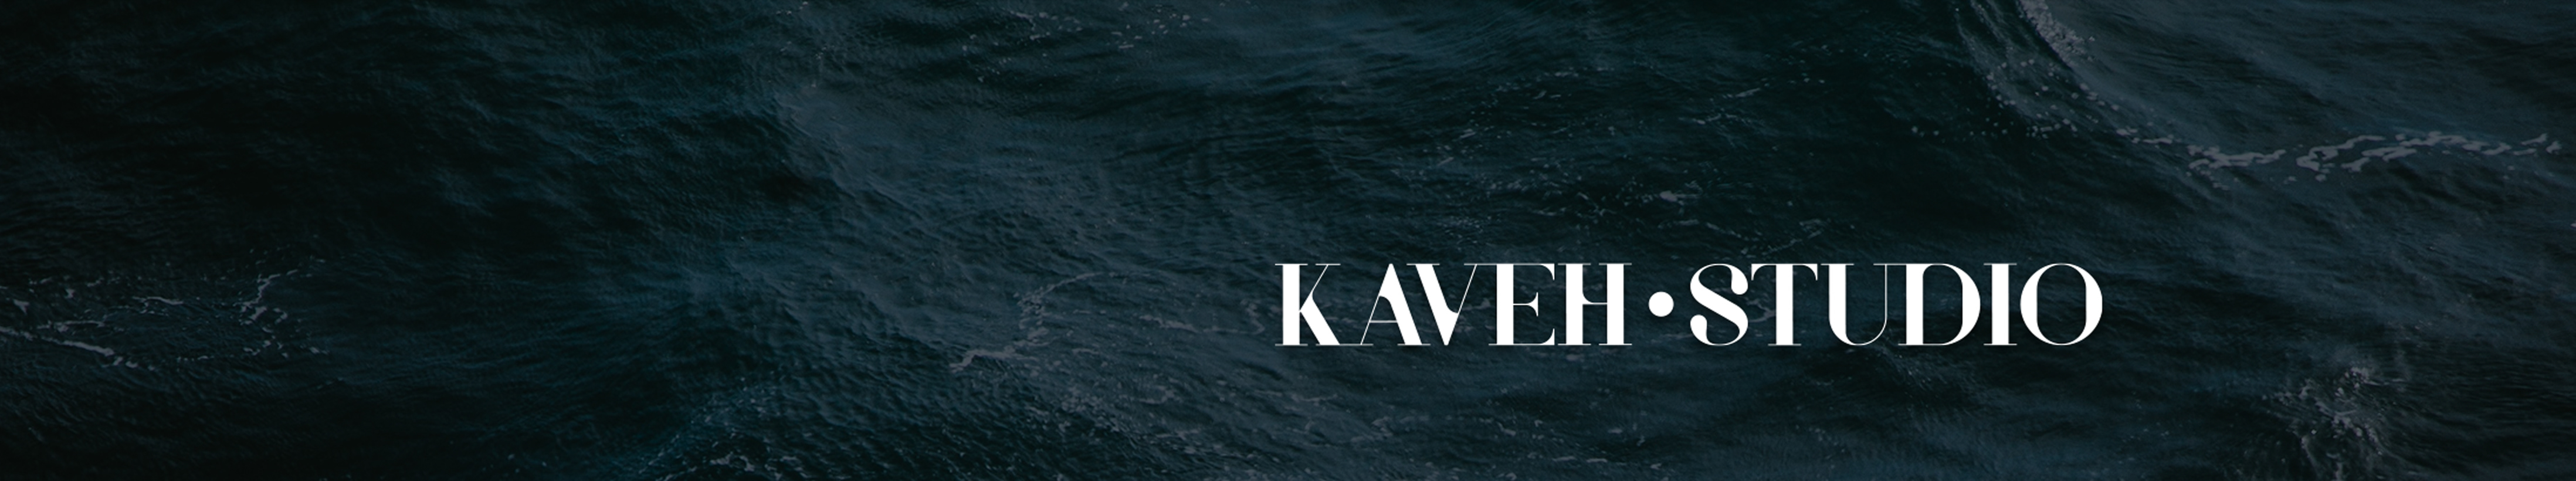 kaveh kazemee's profile banner